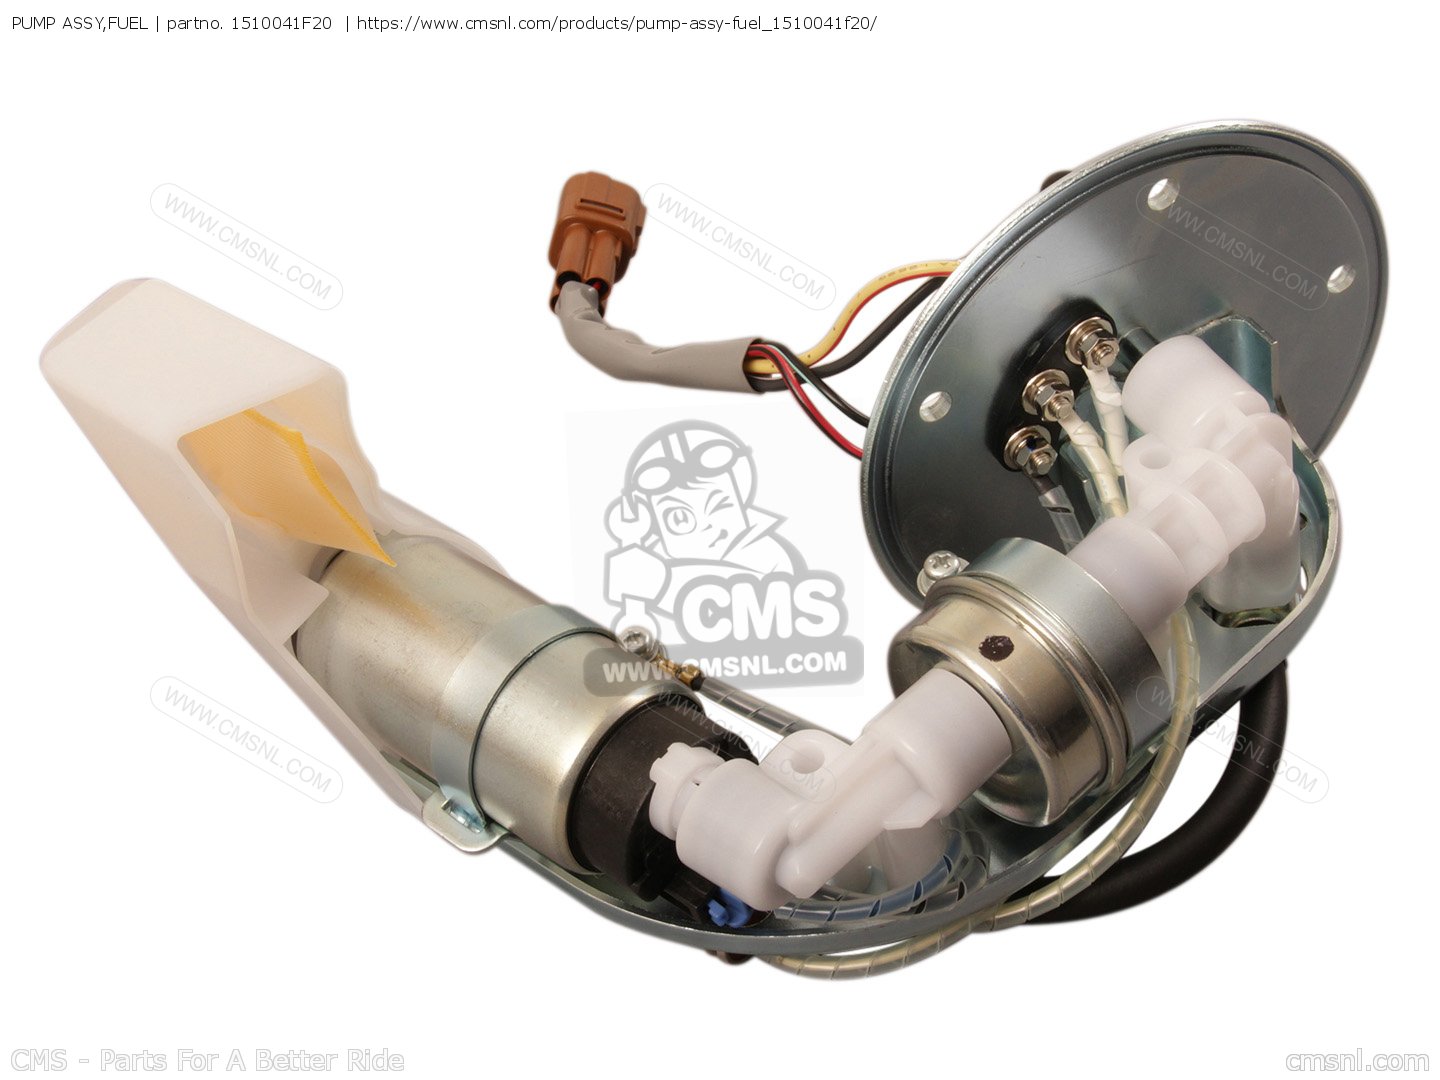 VL800 KEMSO Fuel Pump for Suzuki Boulevard C50 2005-2020 Replaces 15100-41F30